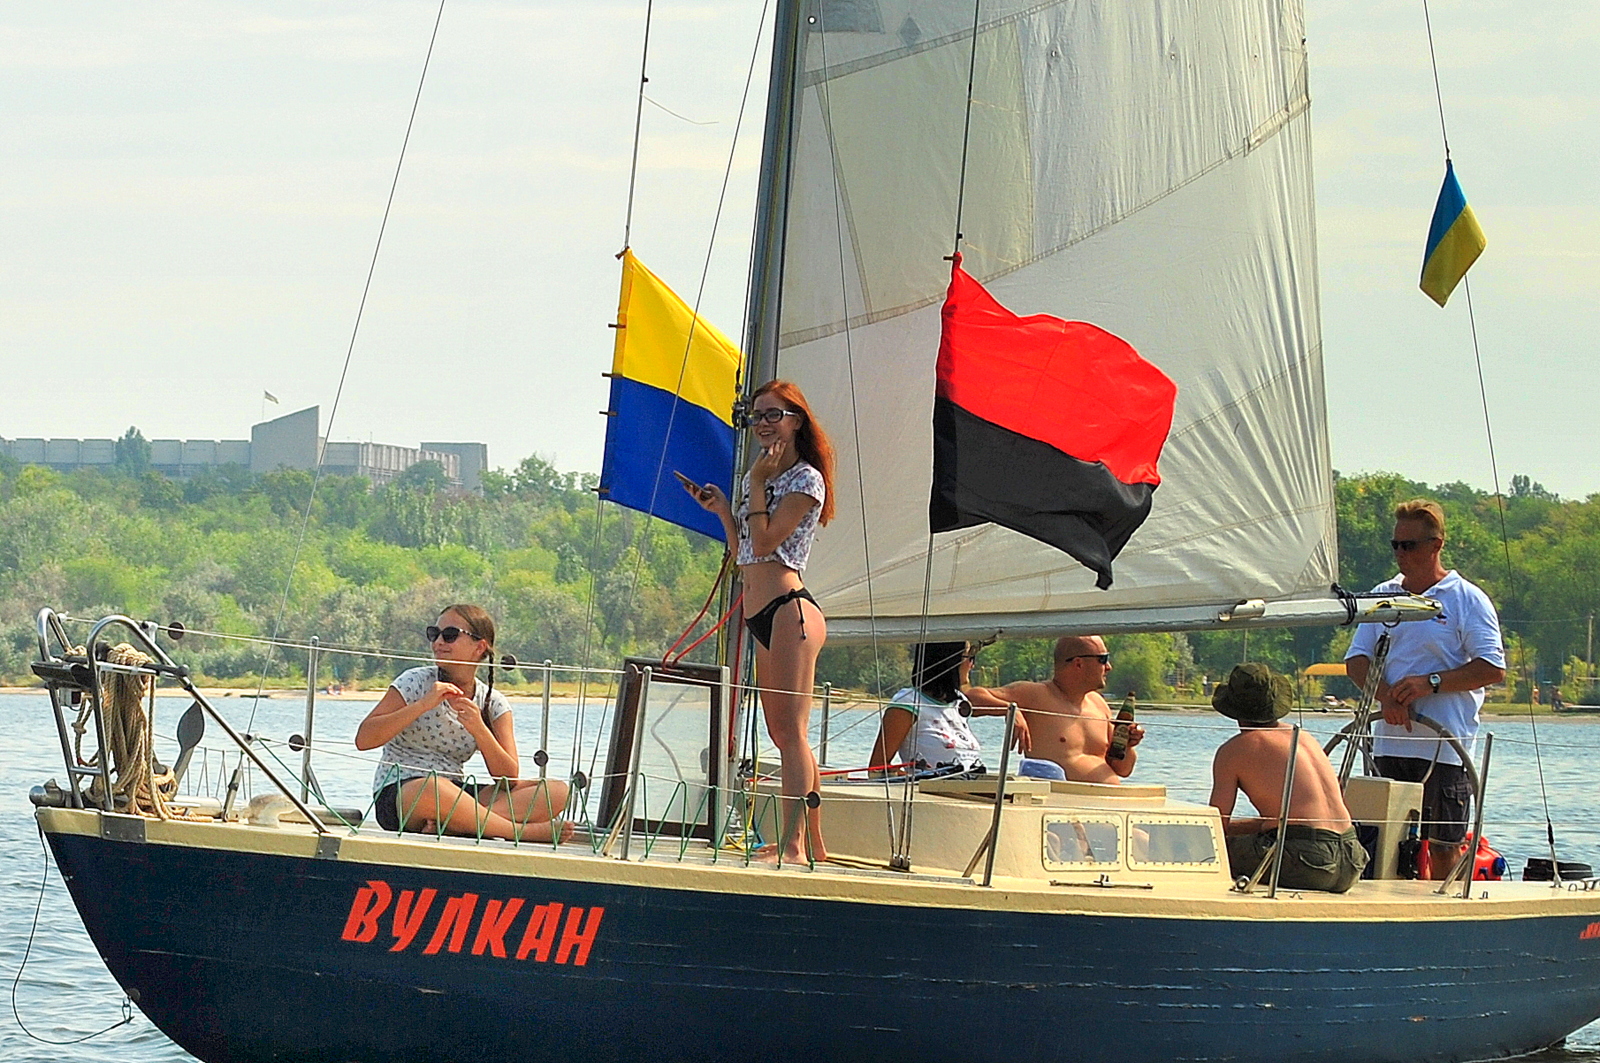 Парад яхт, посвященный Дню Неезависимости Украины